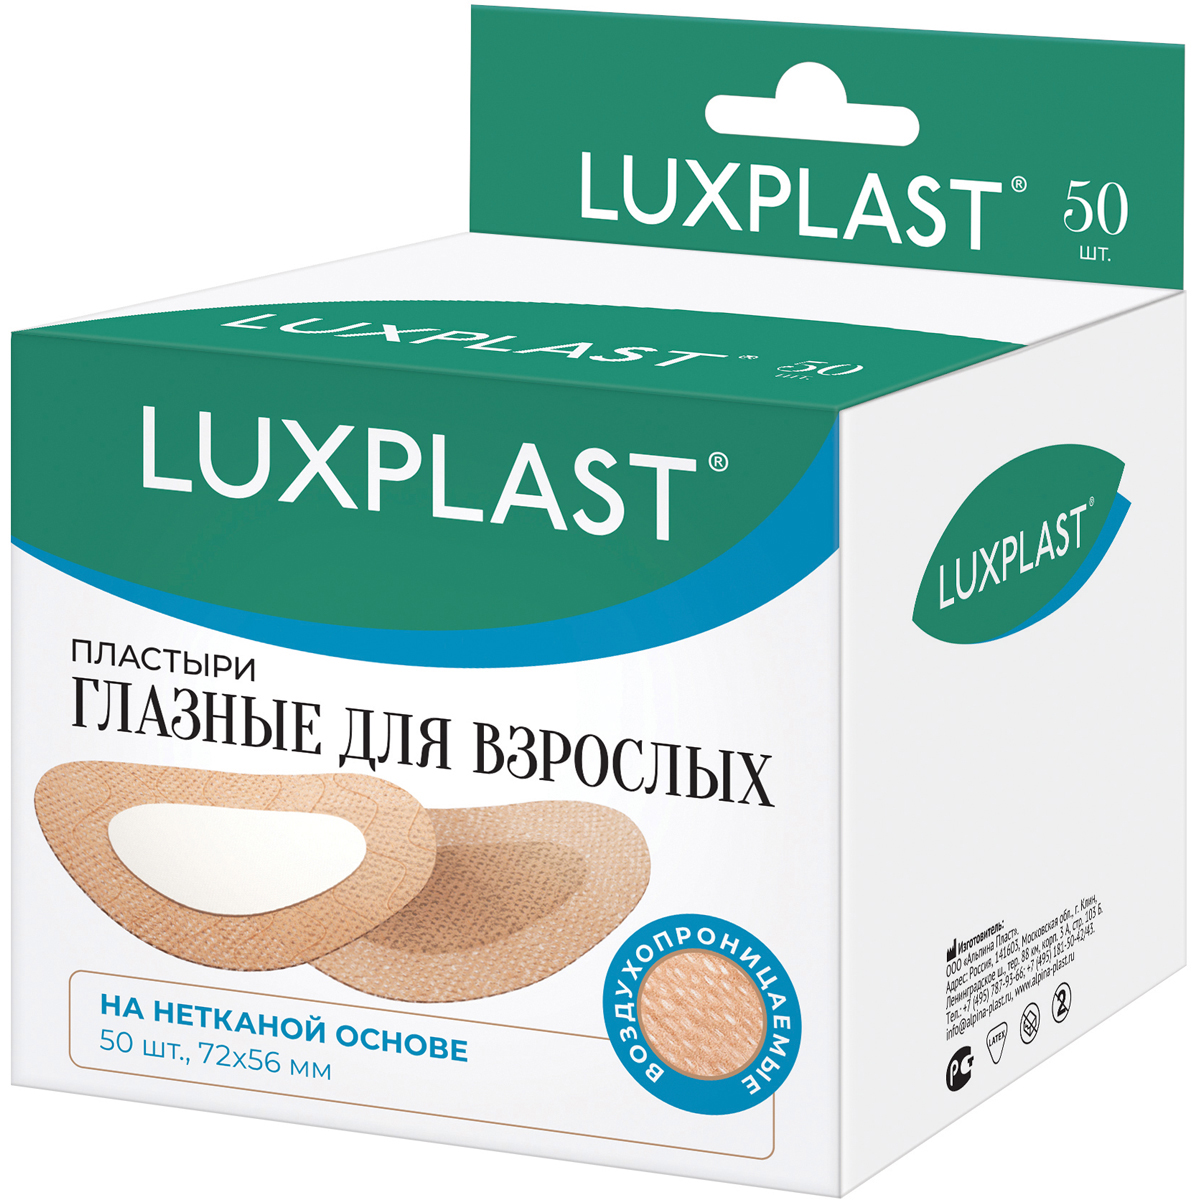 Пластыри глазные Luxplast для взрослых 50 шт - фото 1